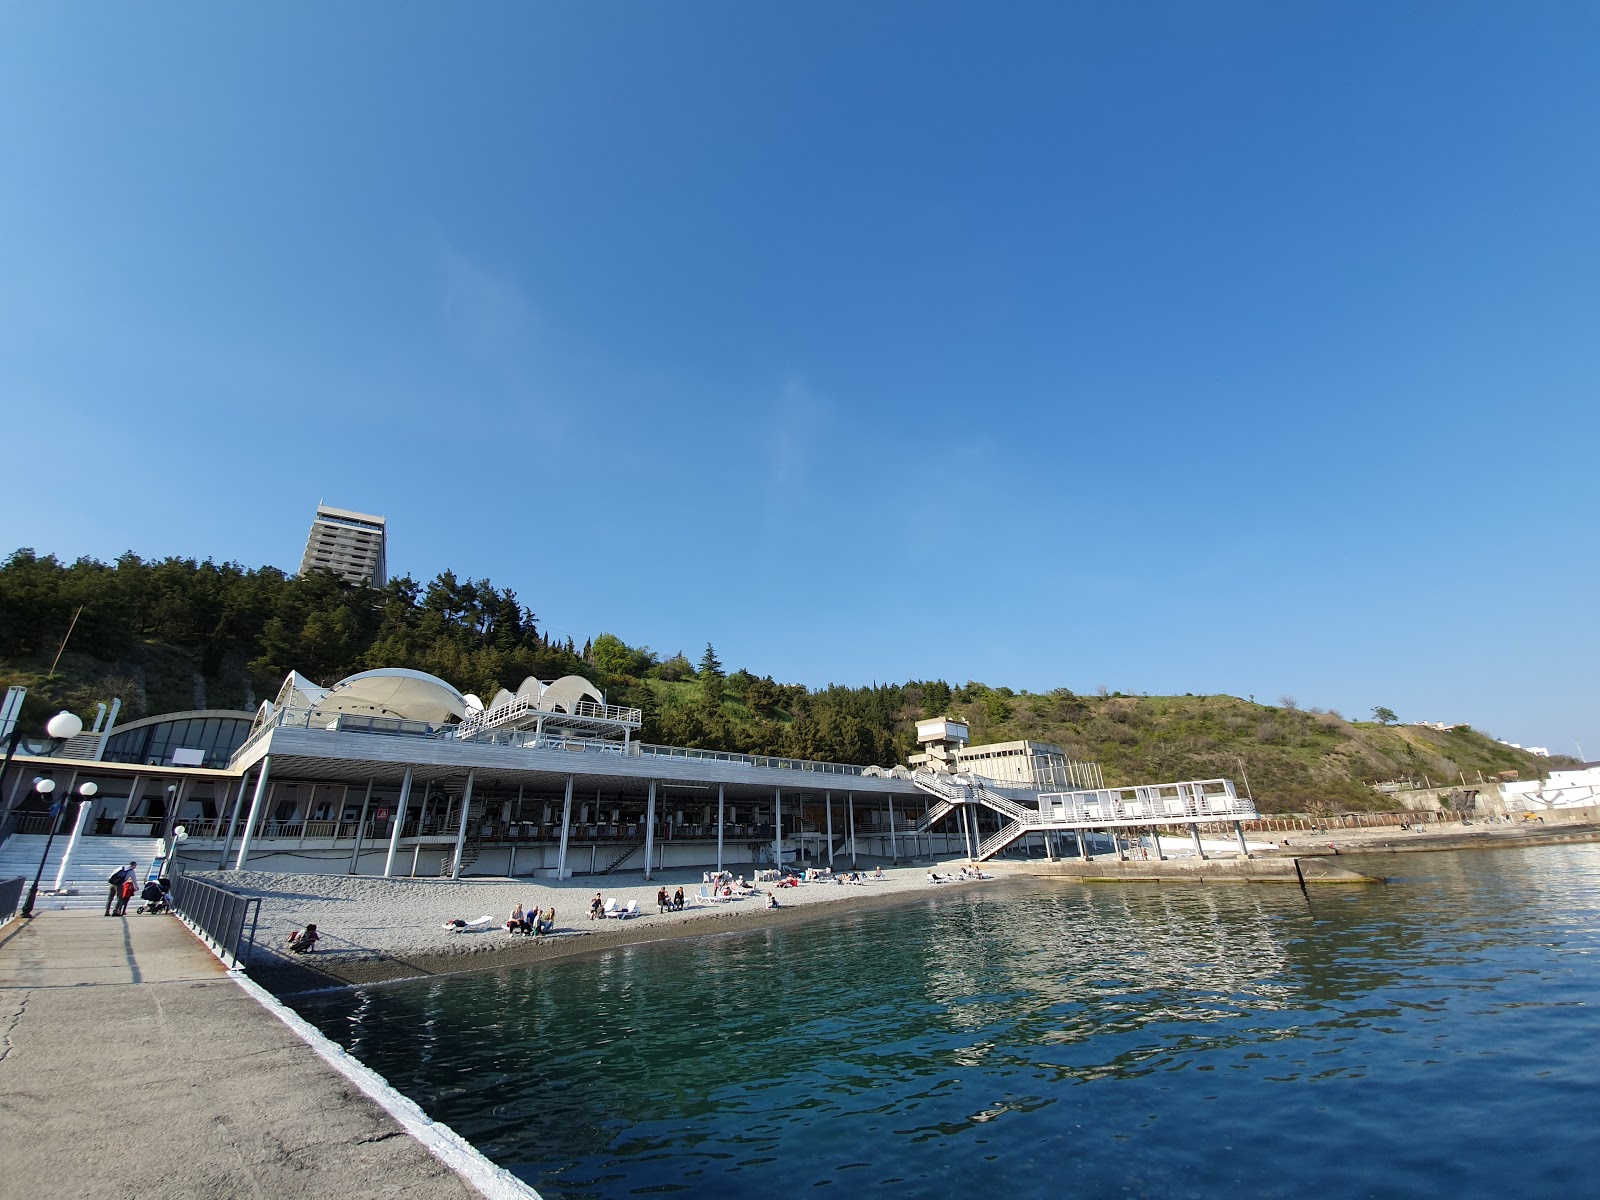 Yalta beach'in fotoğrafı gri ince çakıl taş yüzey ile